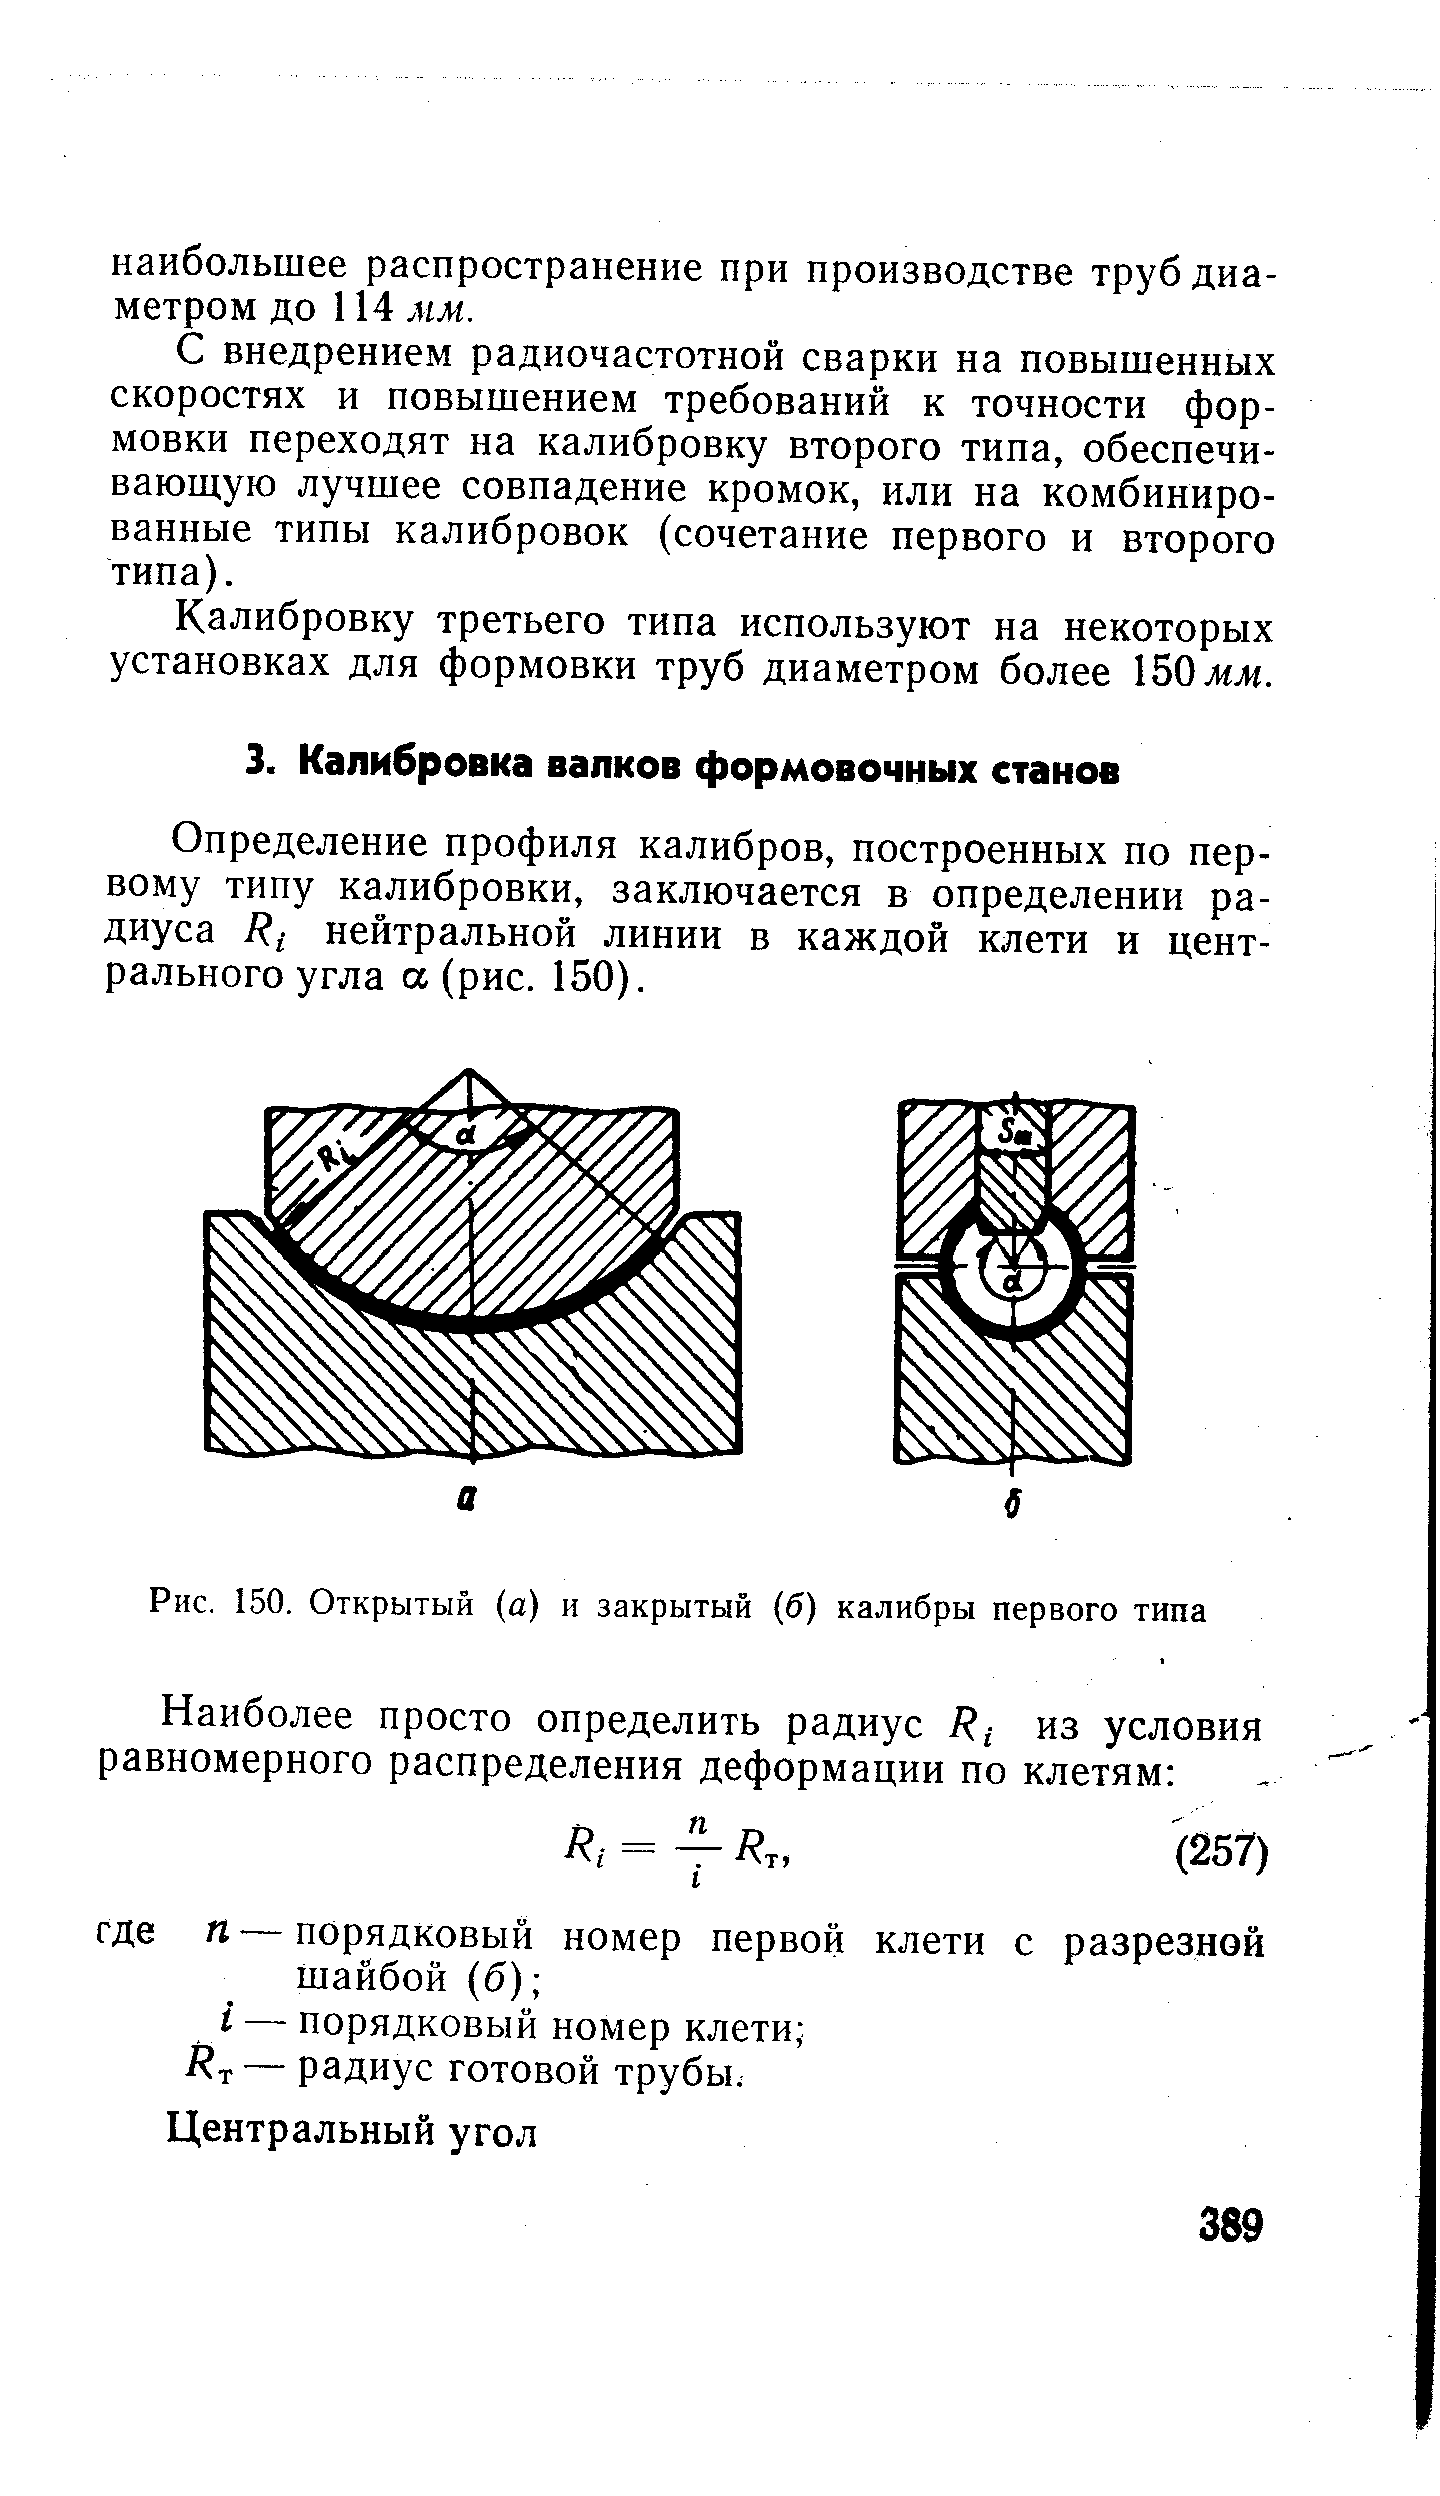 Определение профиля калибров, построенных по первому типу калибровки, заключается в определении радиуса нейтральной линии в каждой клети и центрального угла а (рис. 150).
